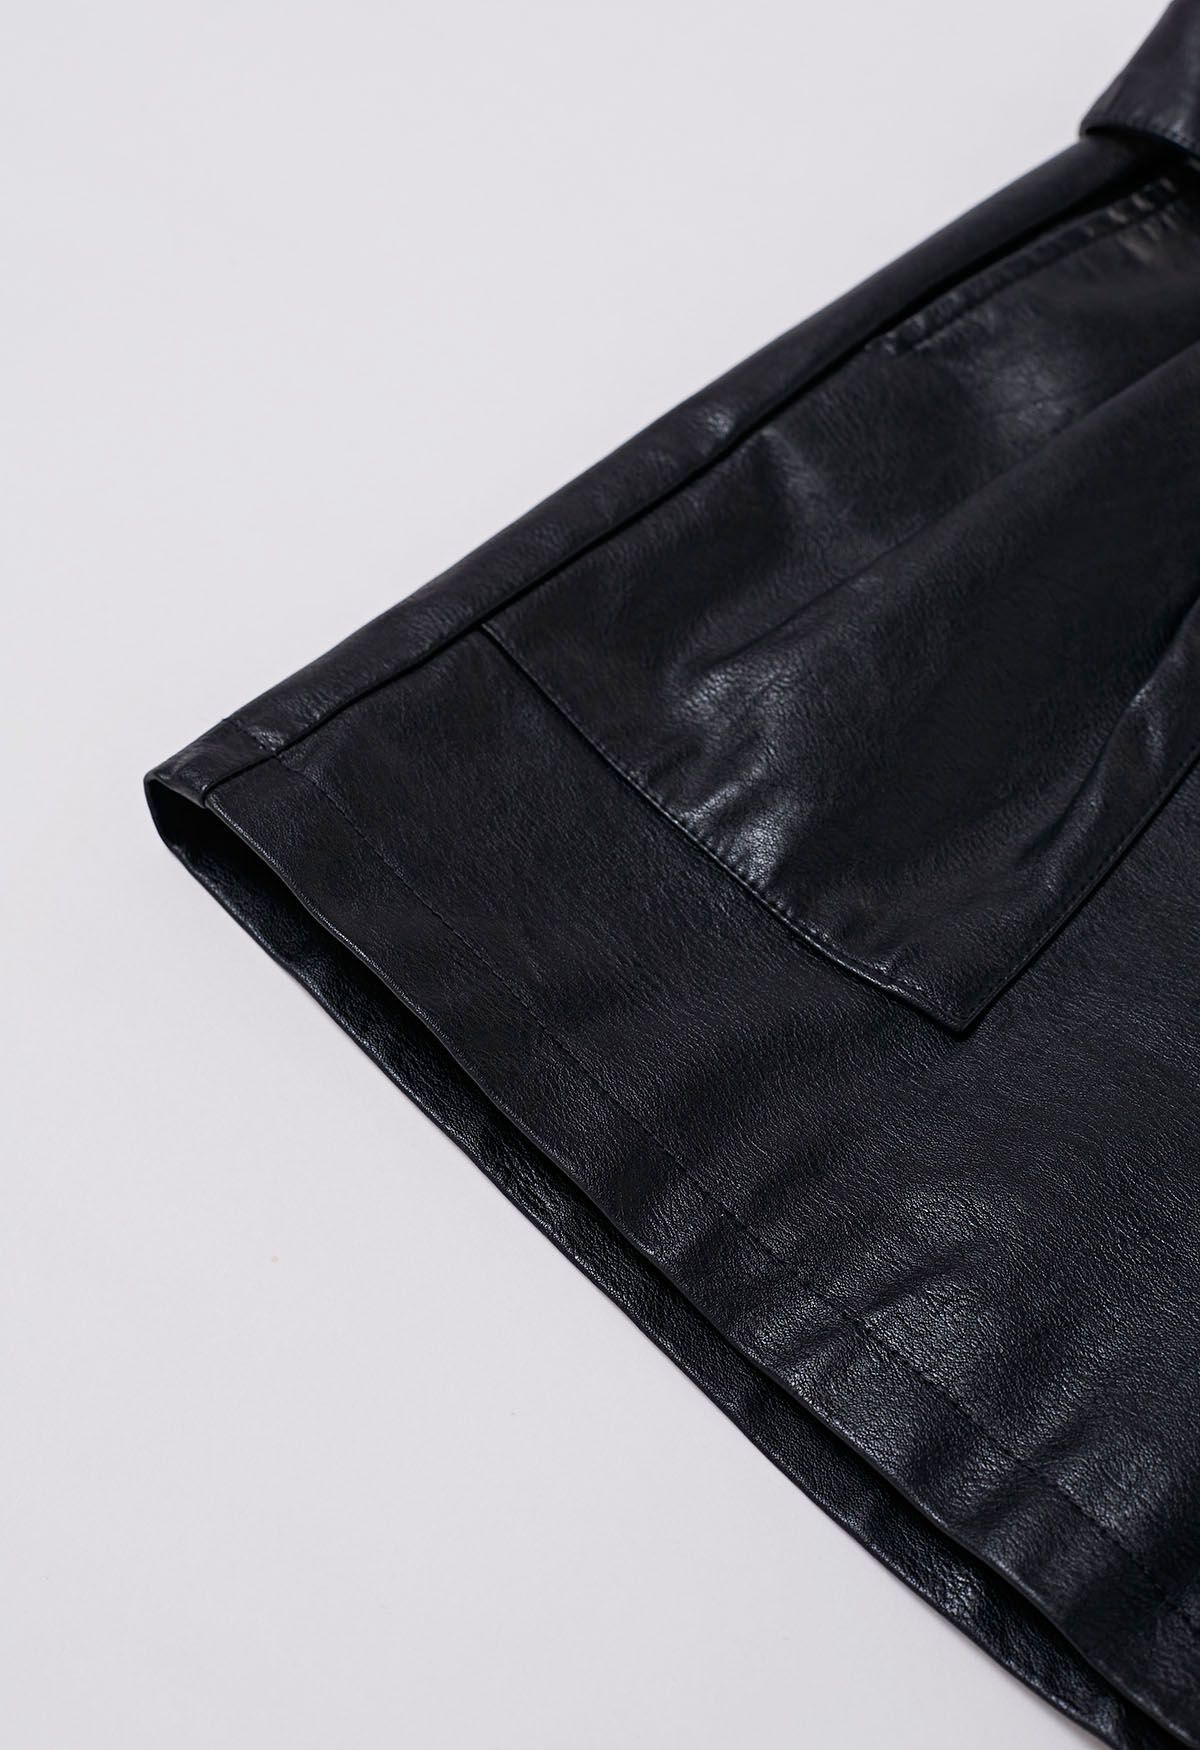 Pantalones cortos negros con cinturón de cuero sintético de Urban Edge